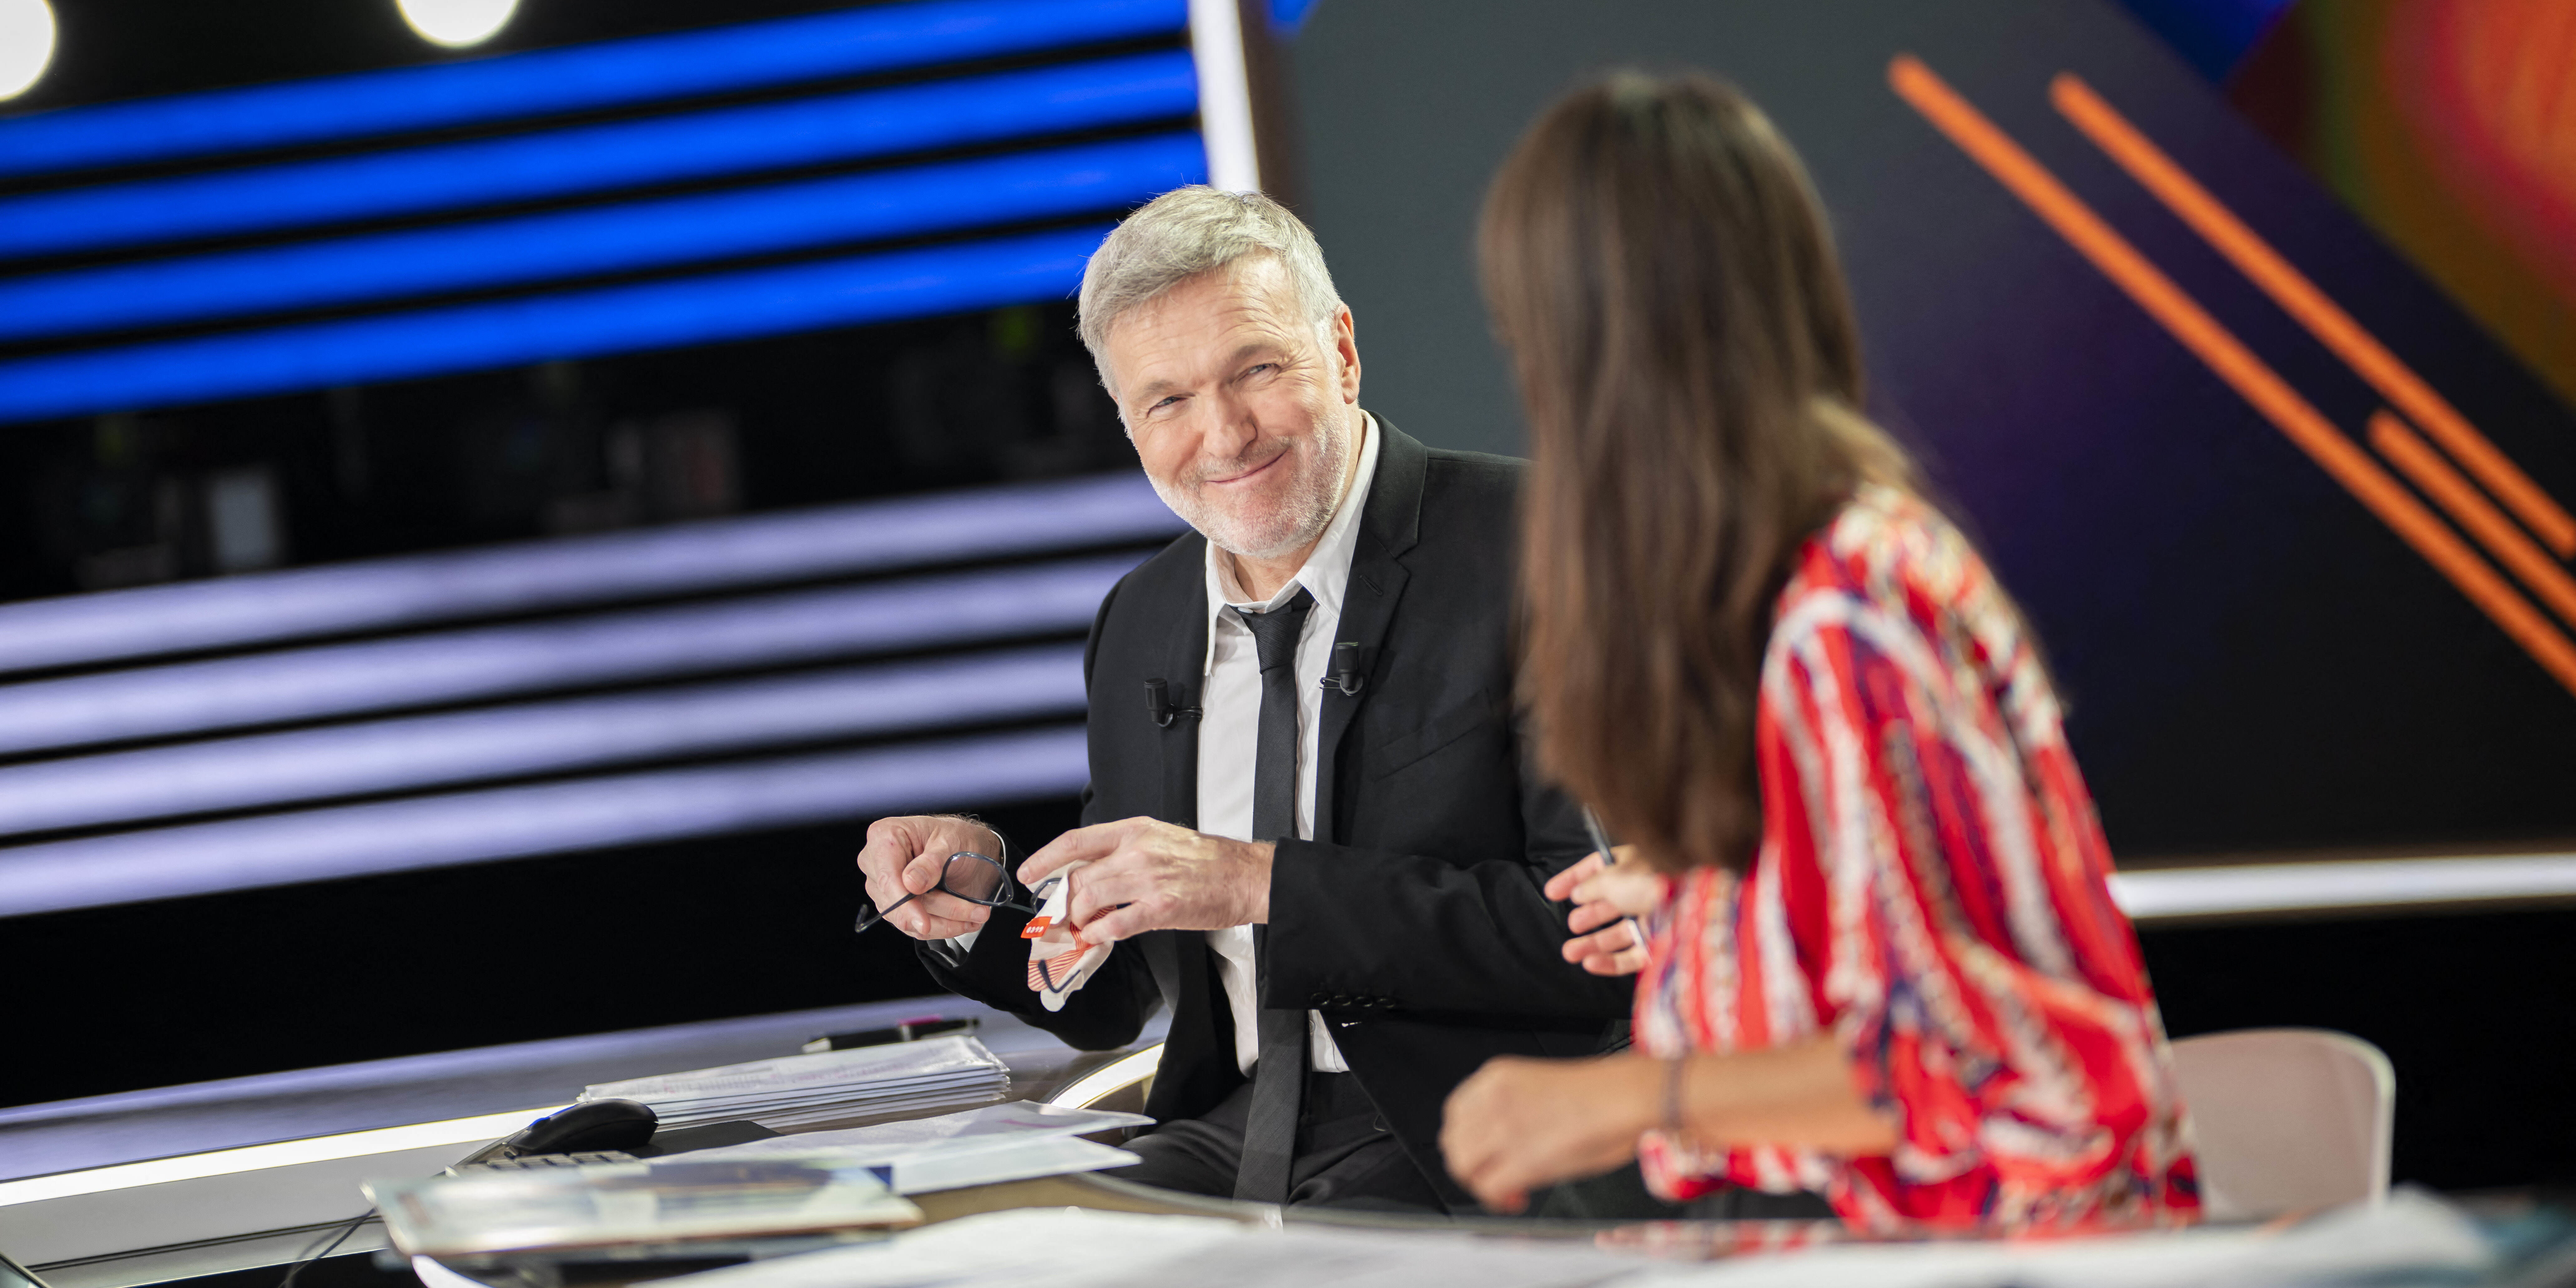 BFMTV : Laurent Ruquier arrête son émission quotidienne... après seulement trois mois d'antenne